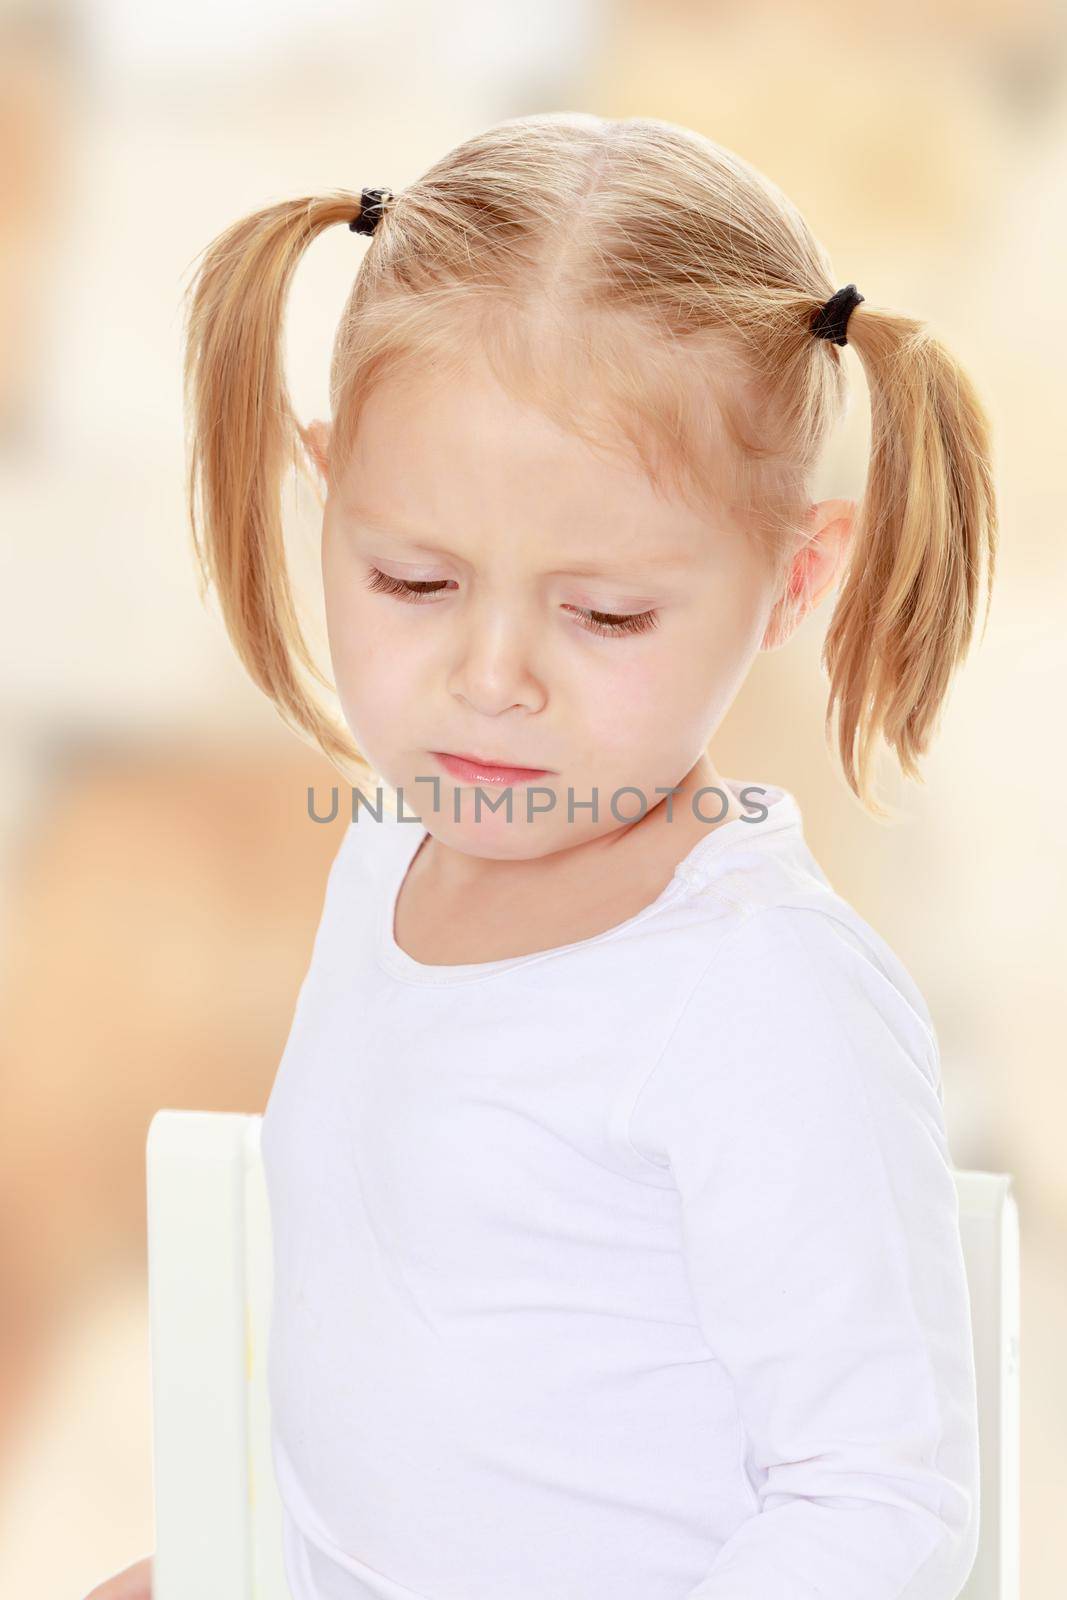 Sad little girl by kolesnikov_studio